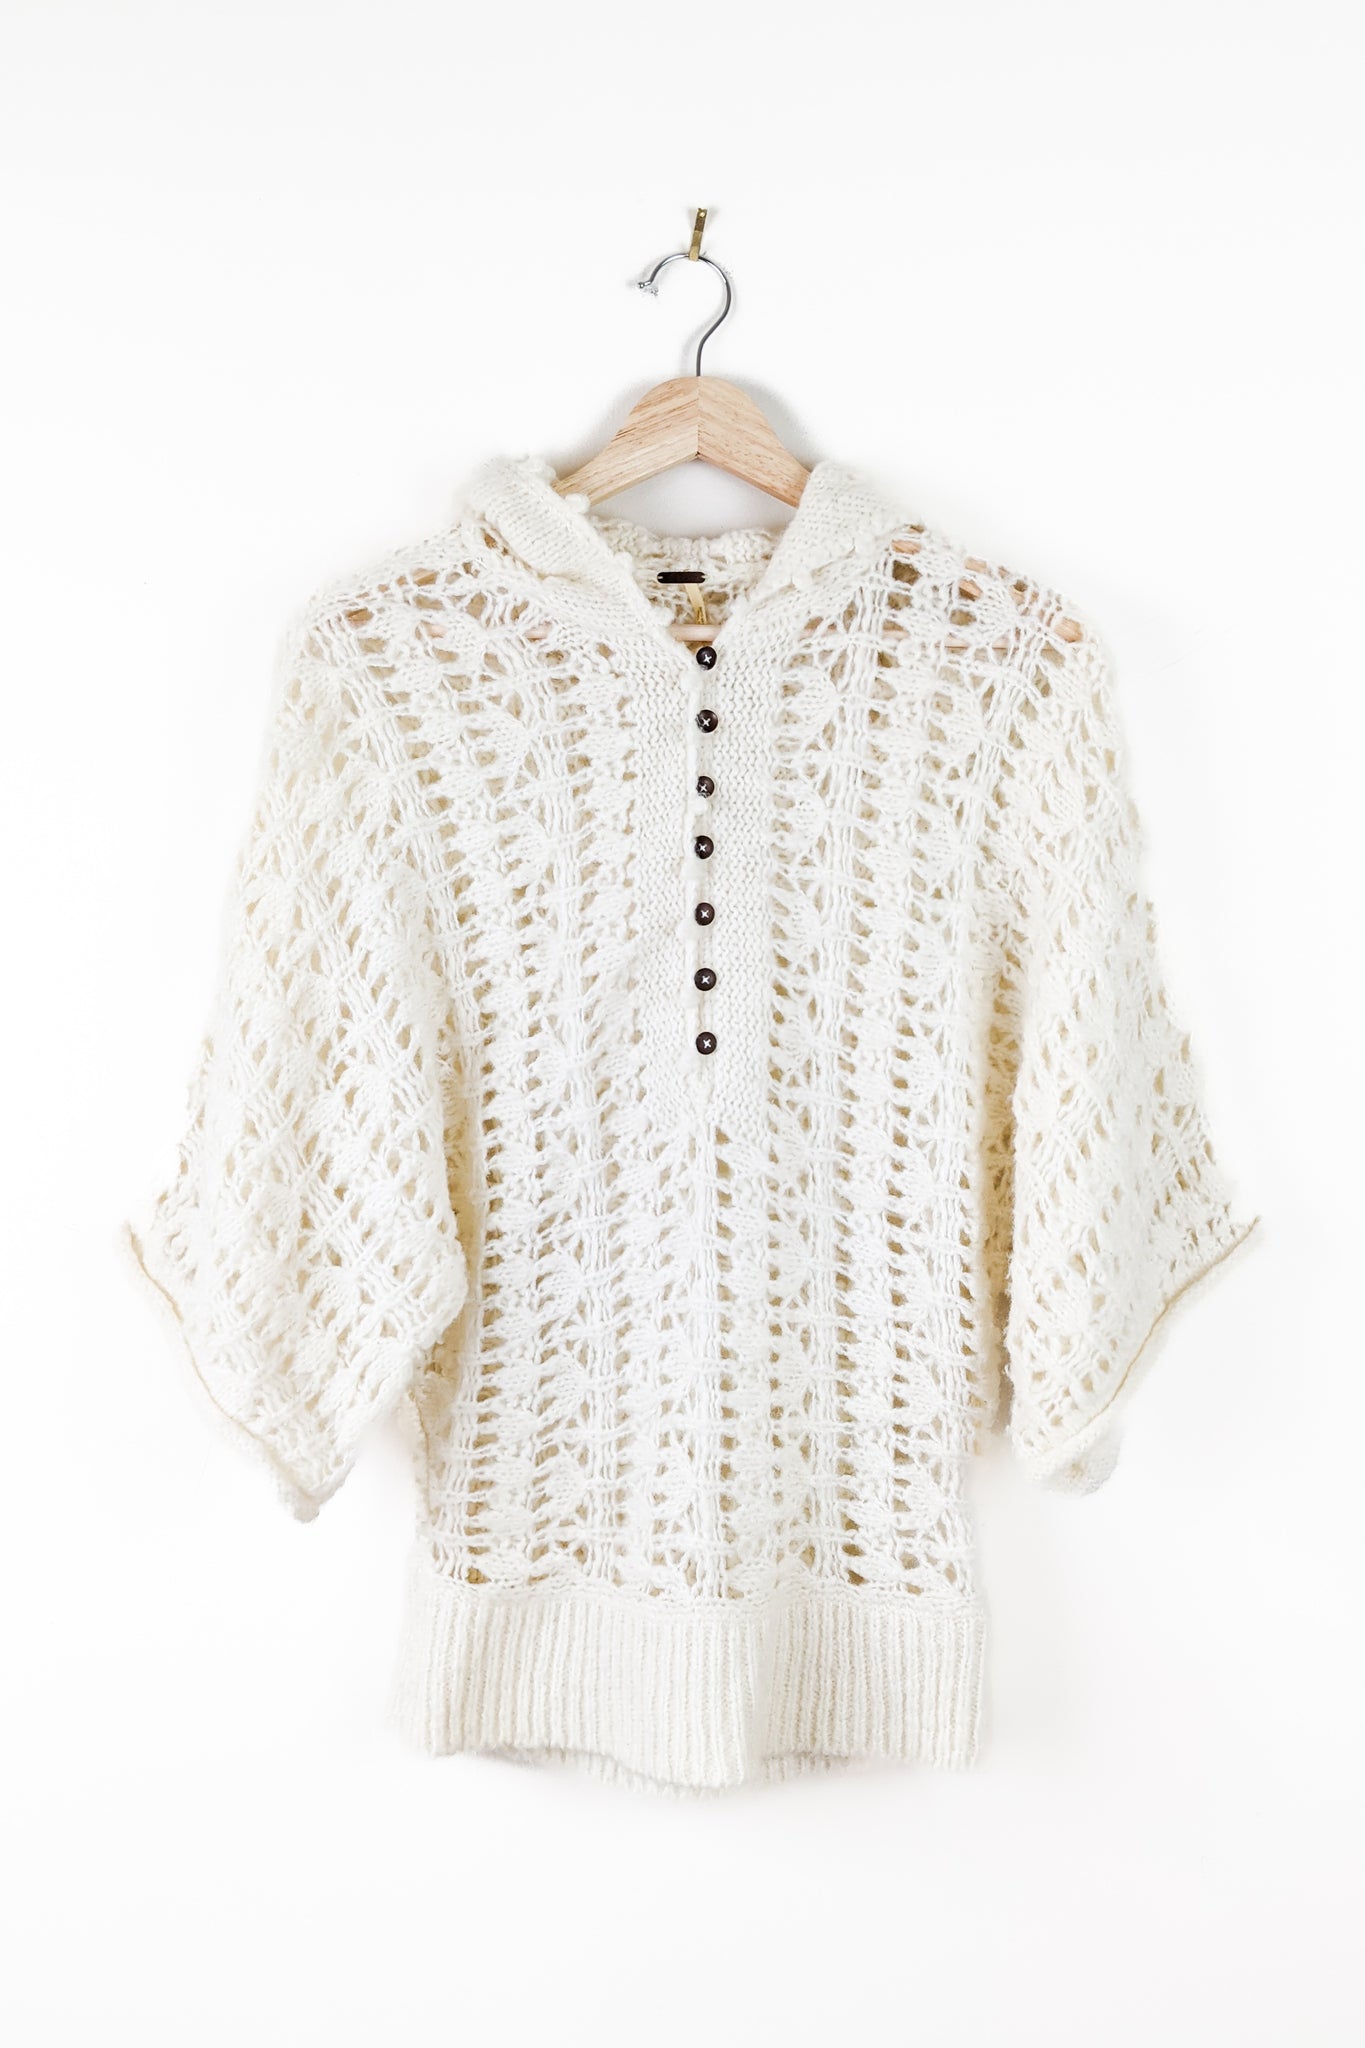 Pre-Loved Ivory Open-Knit Crochet Sweater